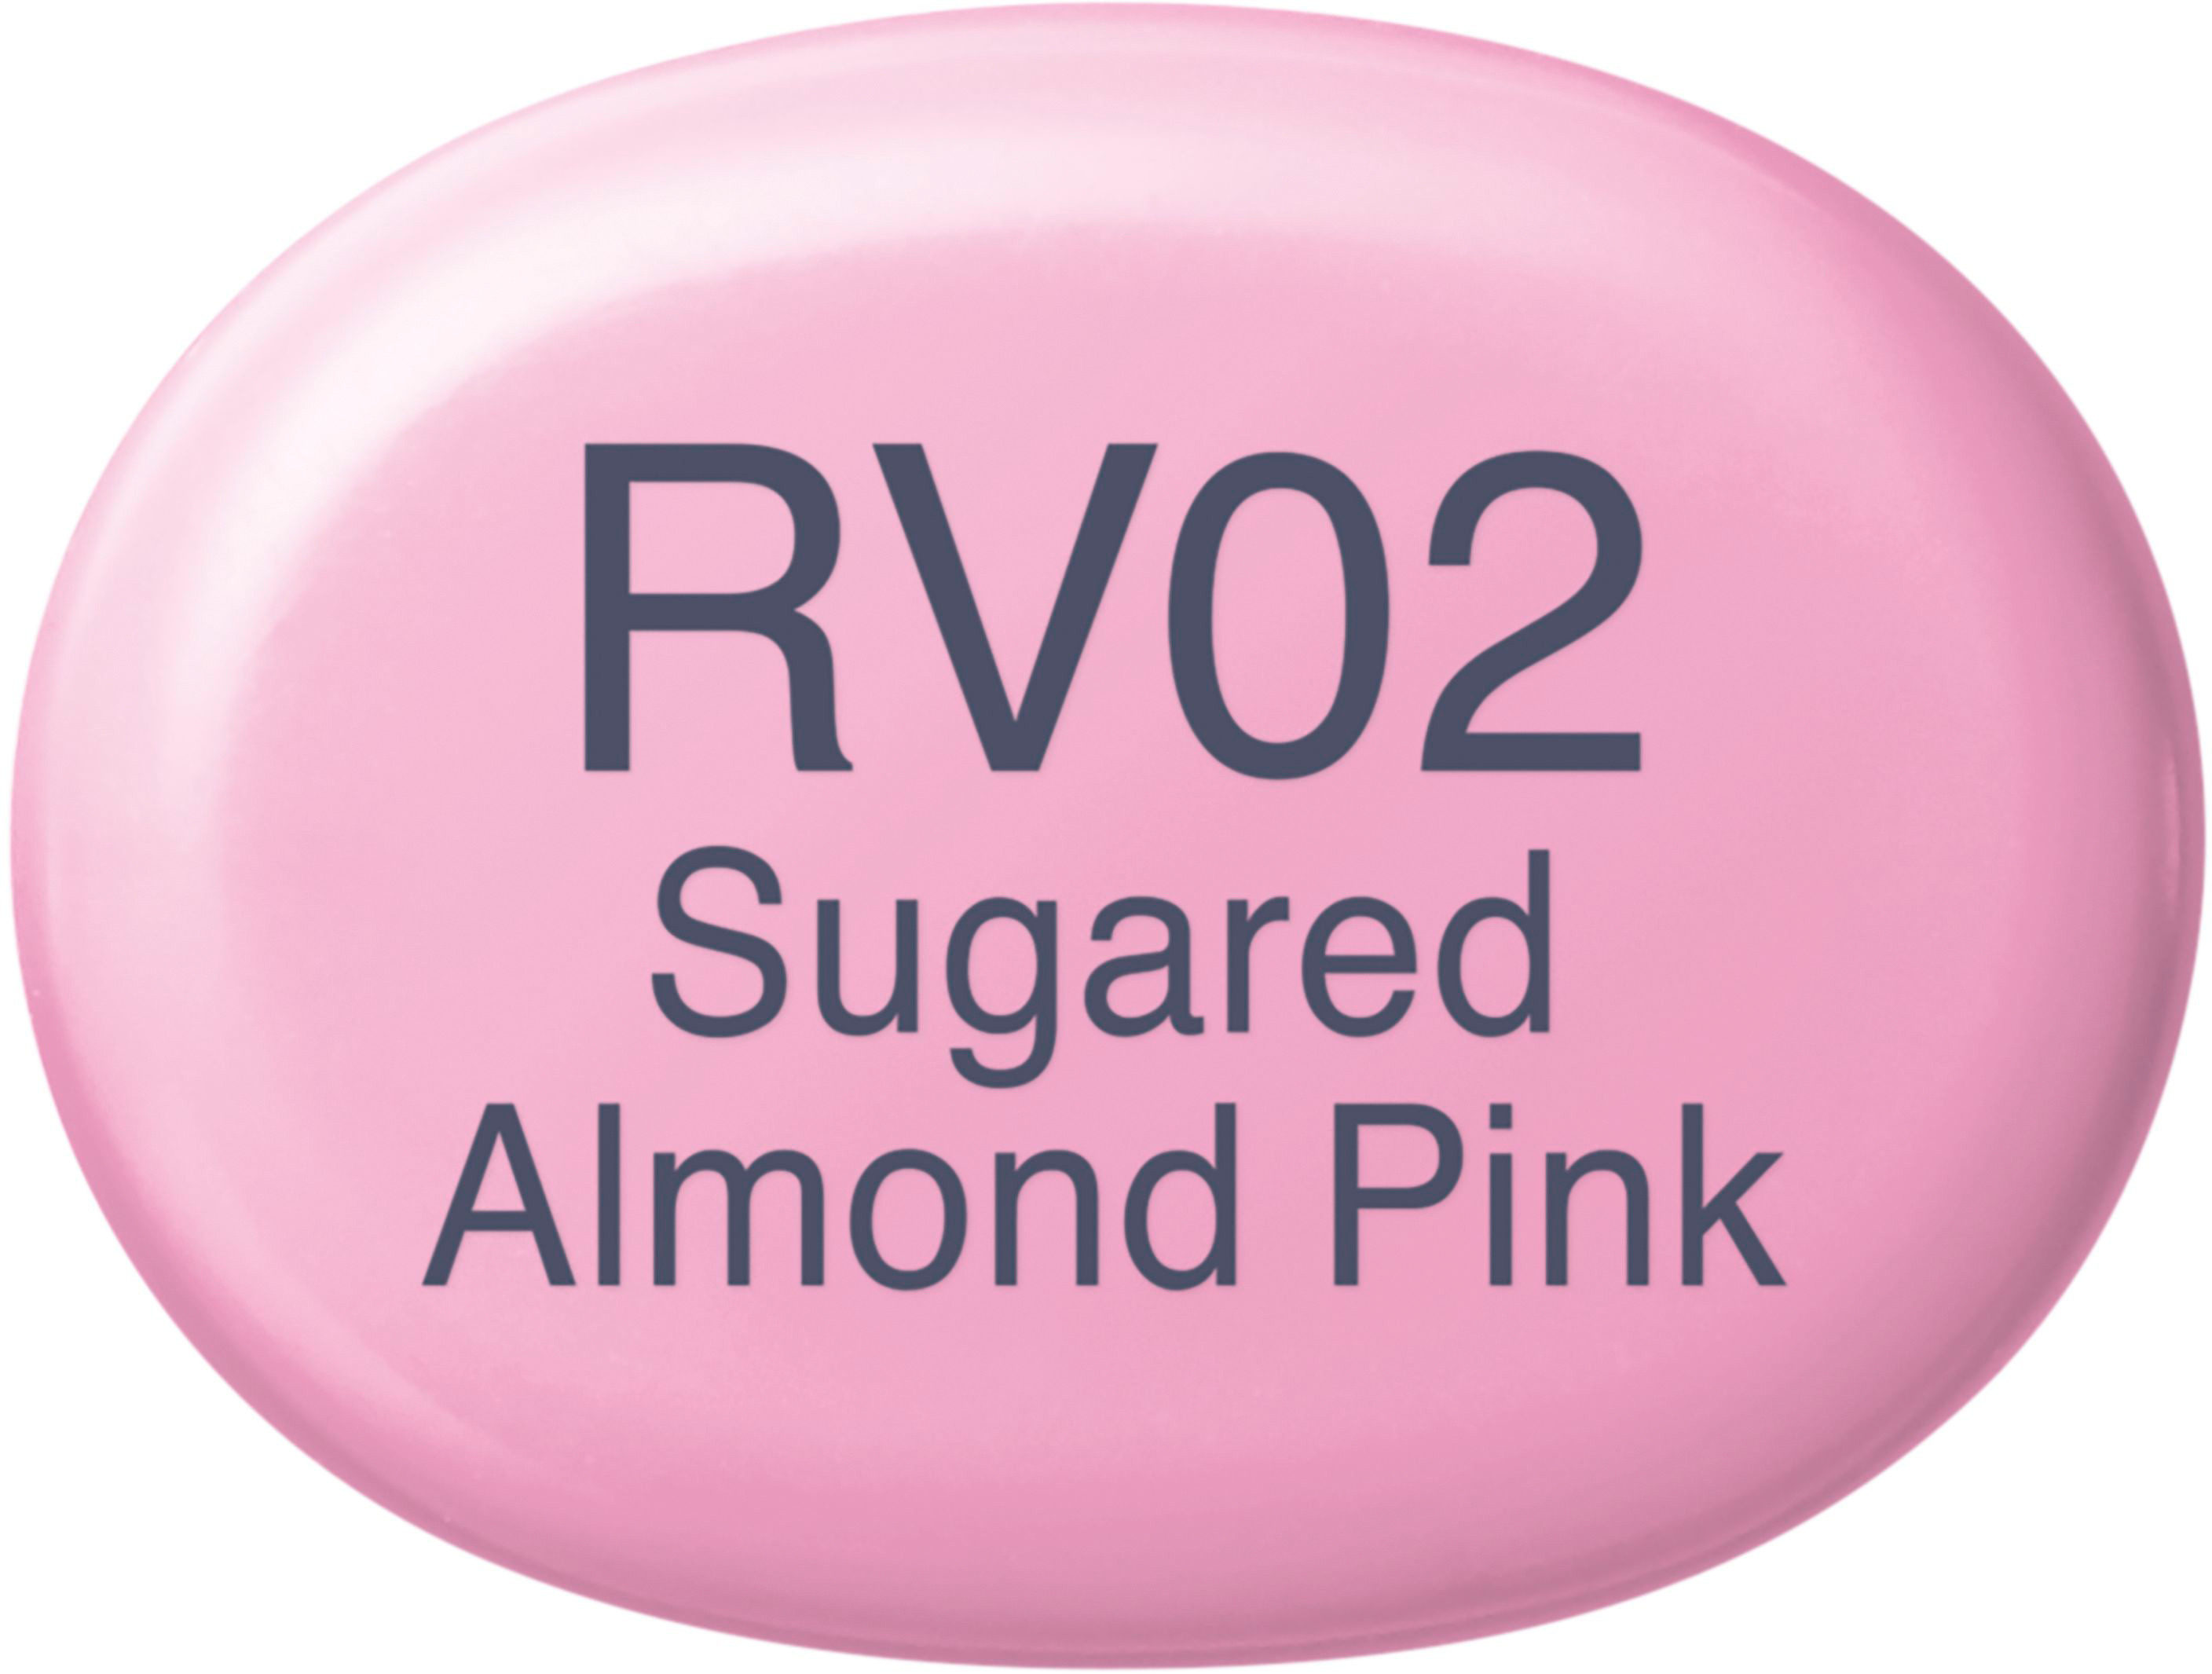 COPIC Marker Sketch 21075176 RV02 - Sugared Almond Pink